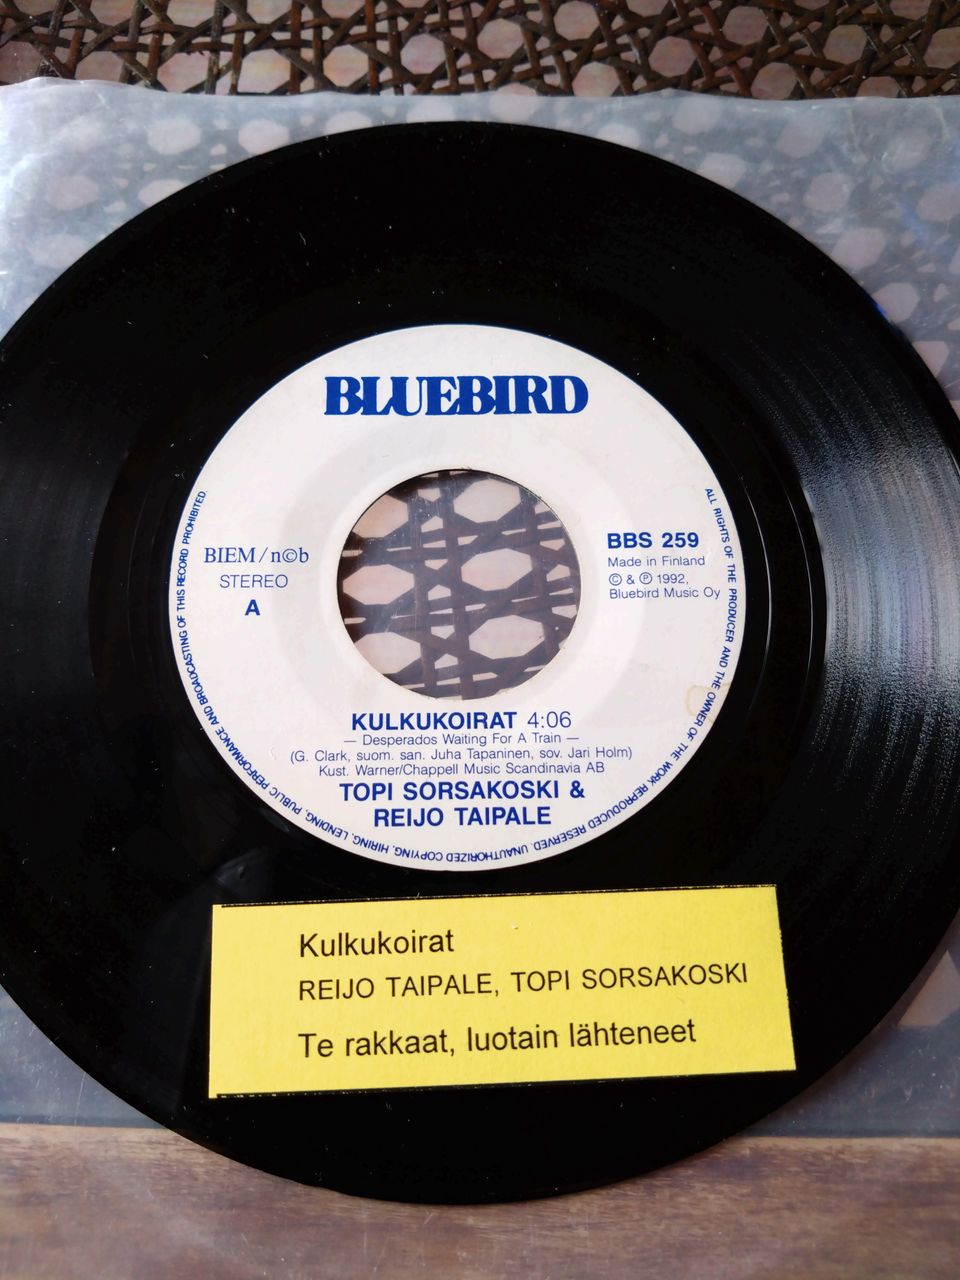 Topi Sorsakoski & Reijo Taipale 7" Single